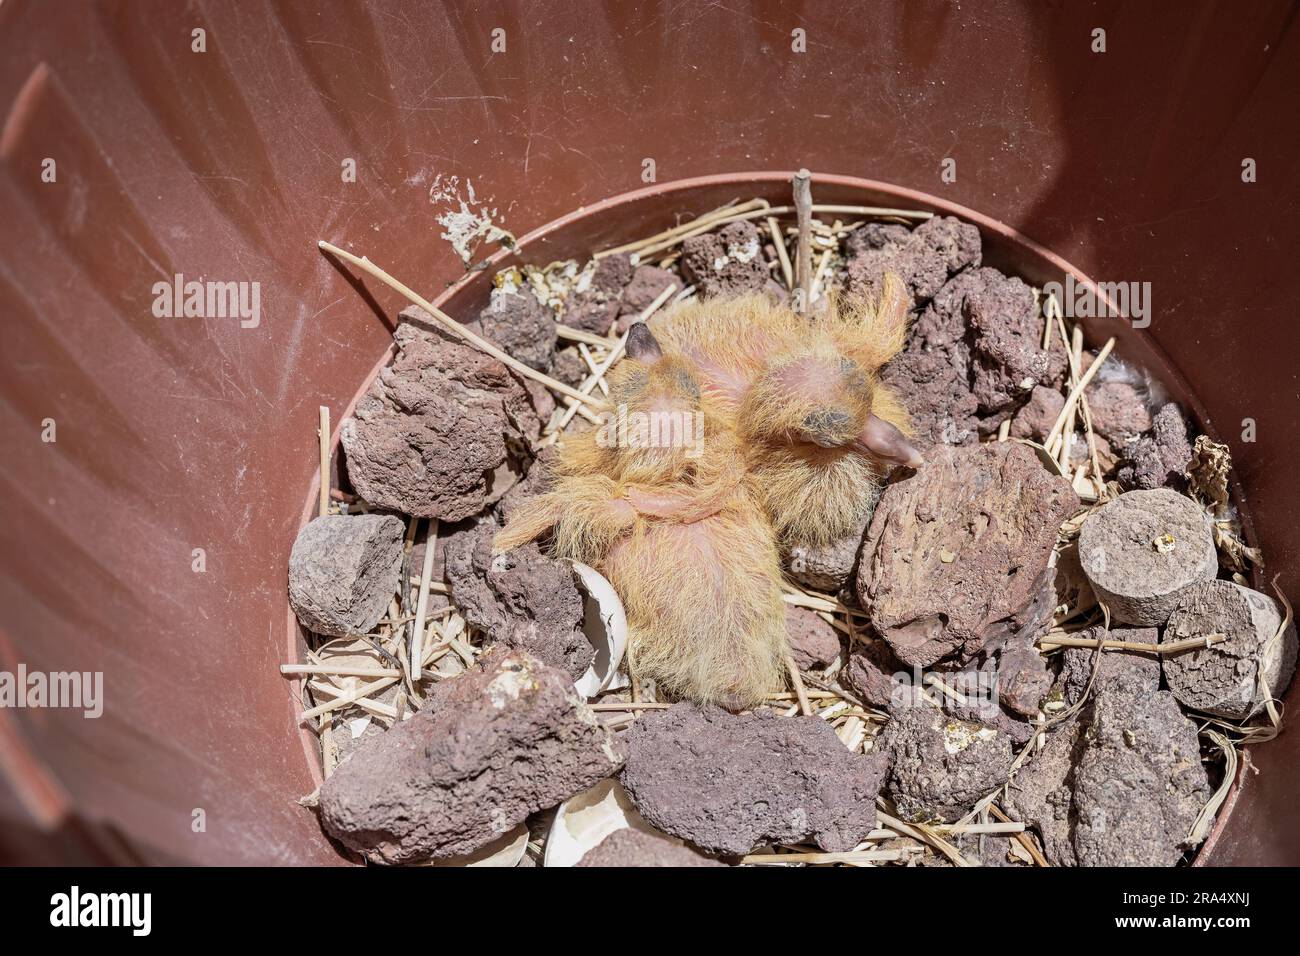 deux alevins de pigeon se rassemblent dans un nid au fond d'un pot de plantes entouré de galets de lave Banque D'Images